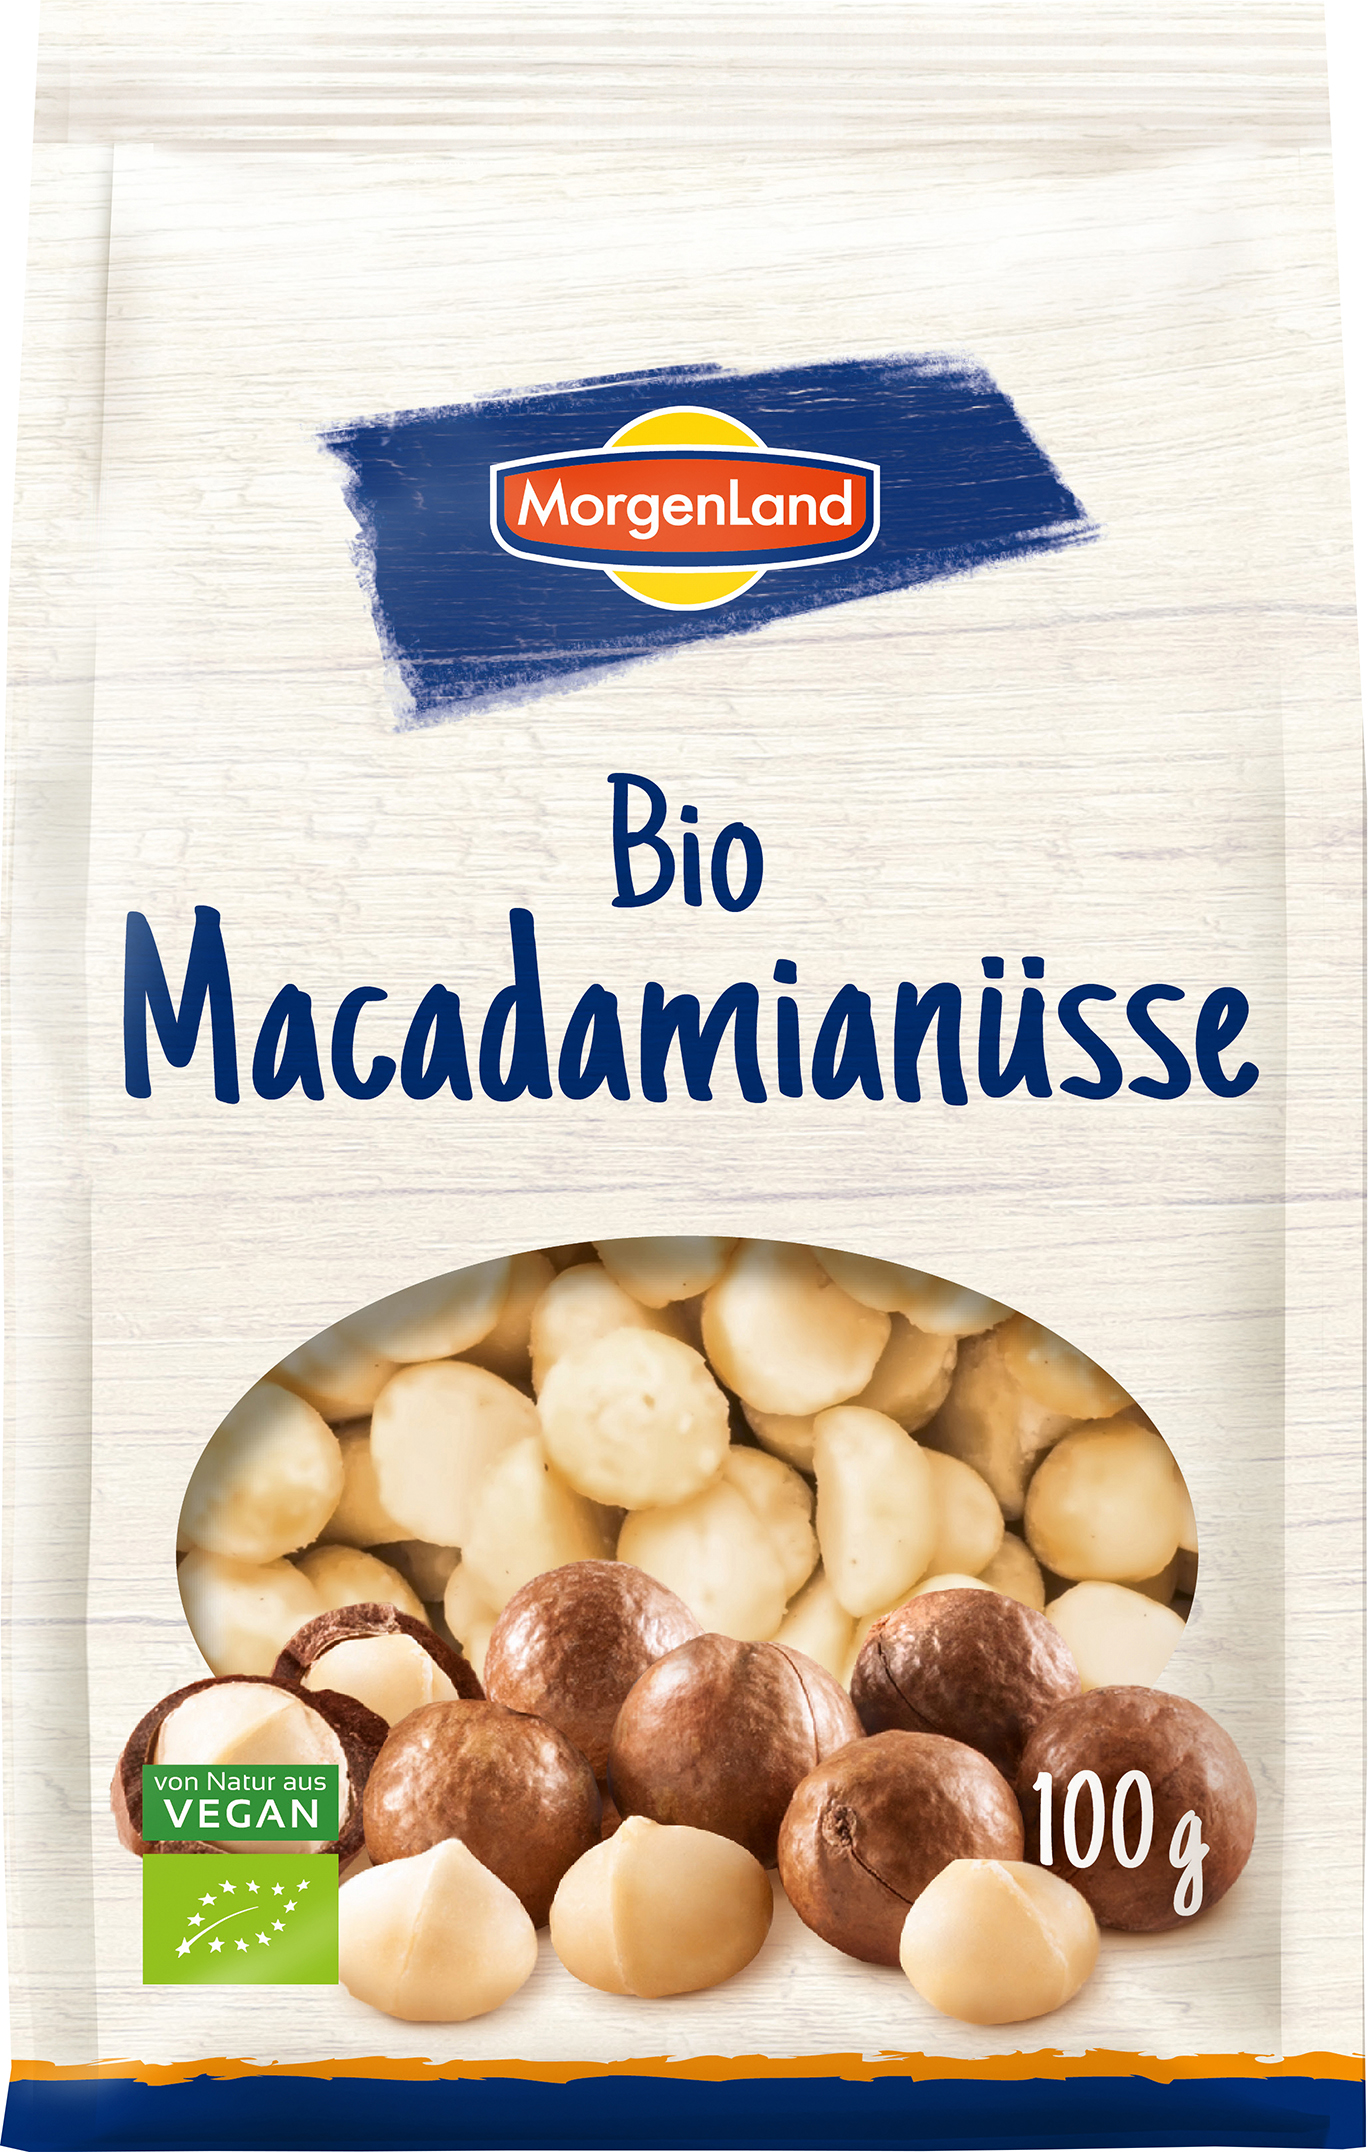 MorgenLand Macadamianüsse 100g